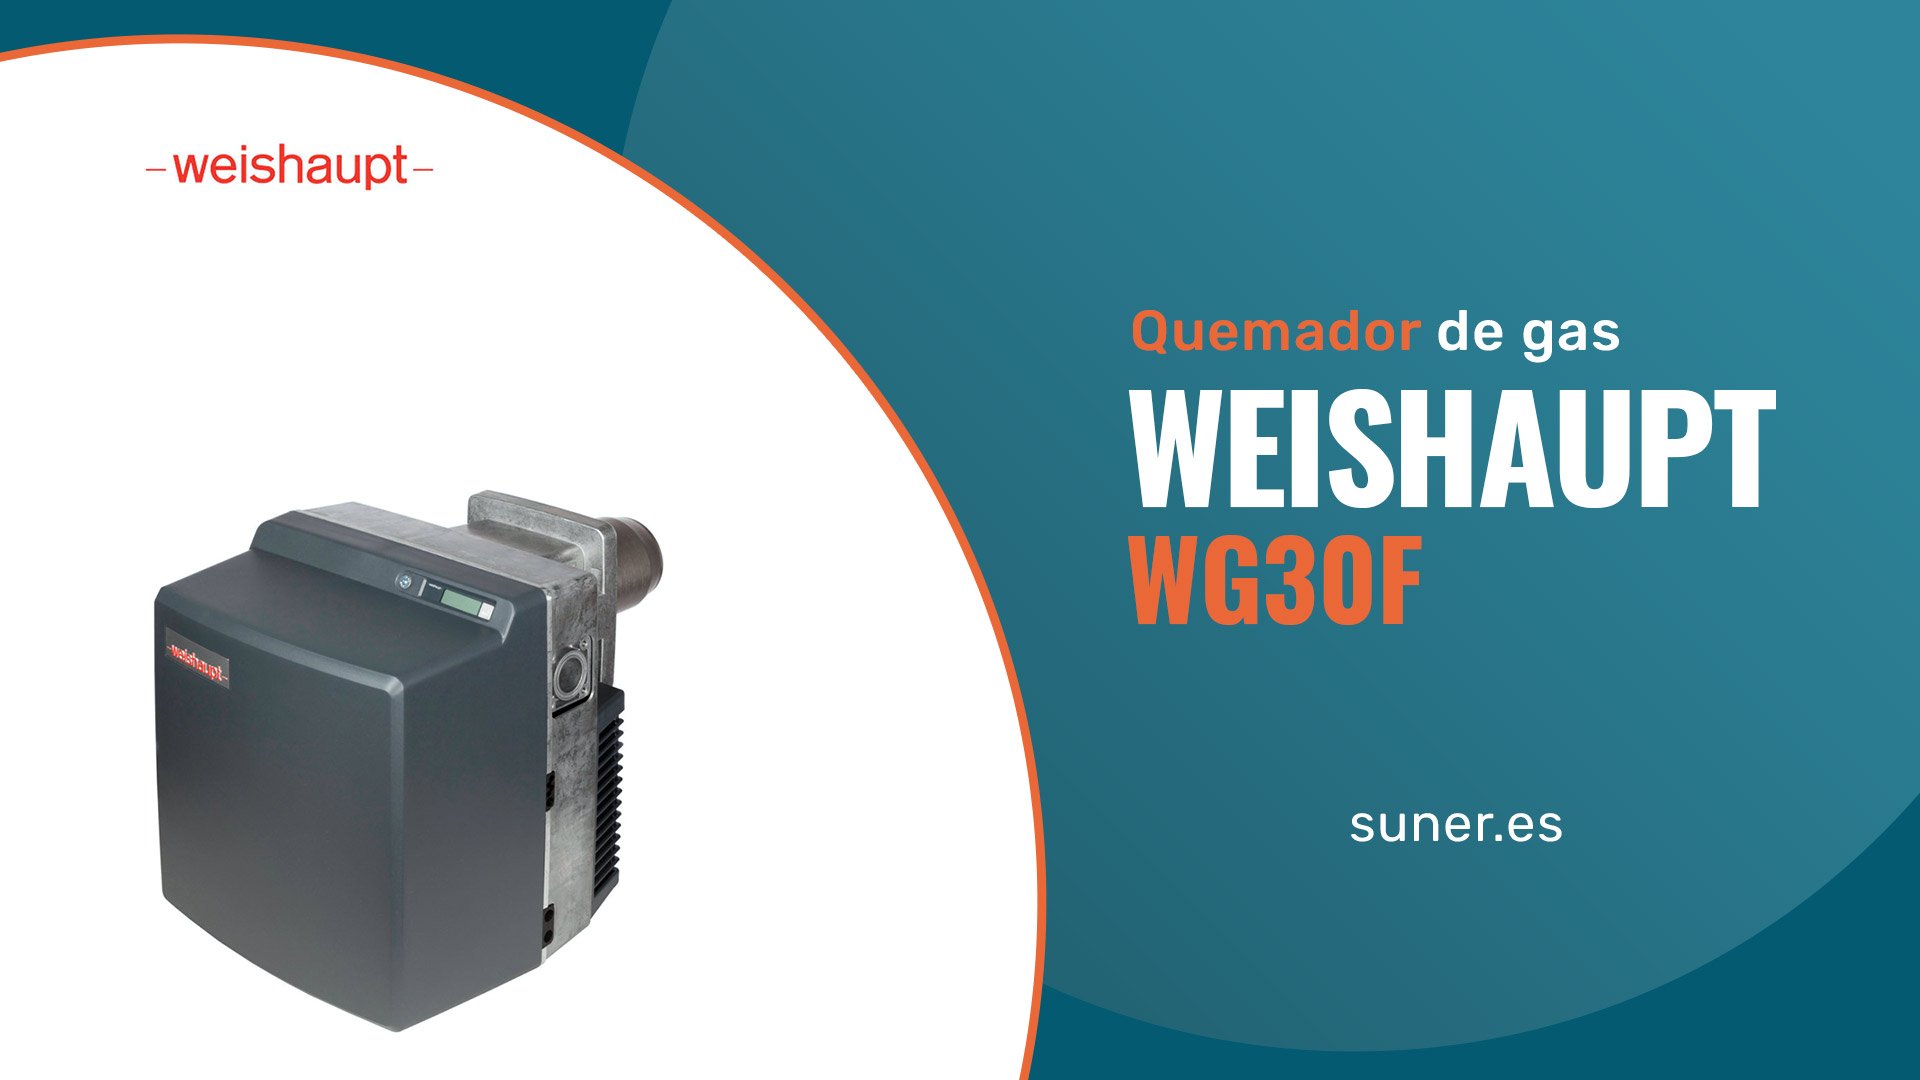 01 Quemador de gas Weishaupt WG30F